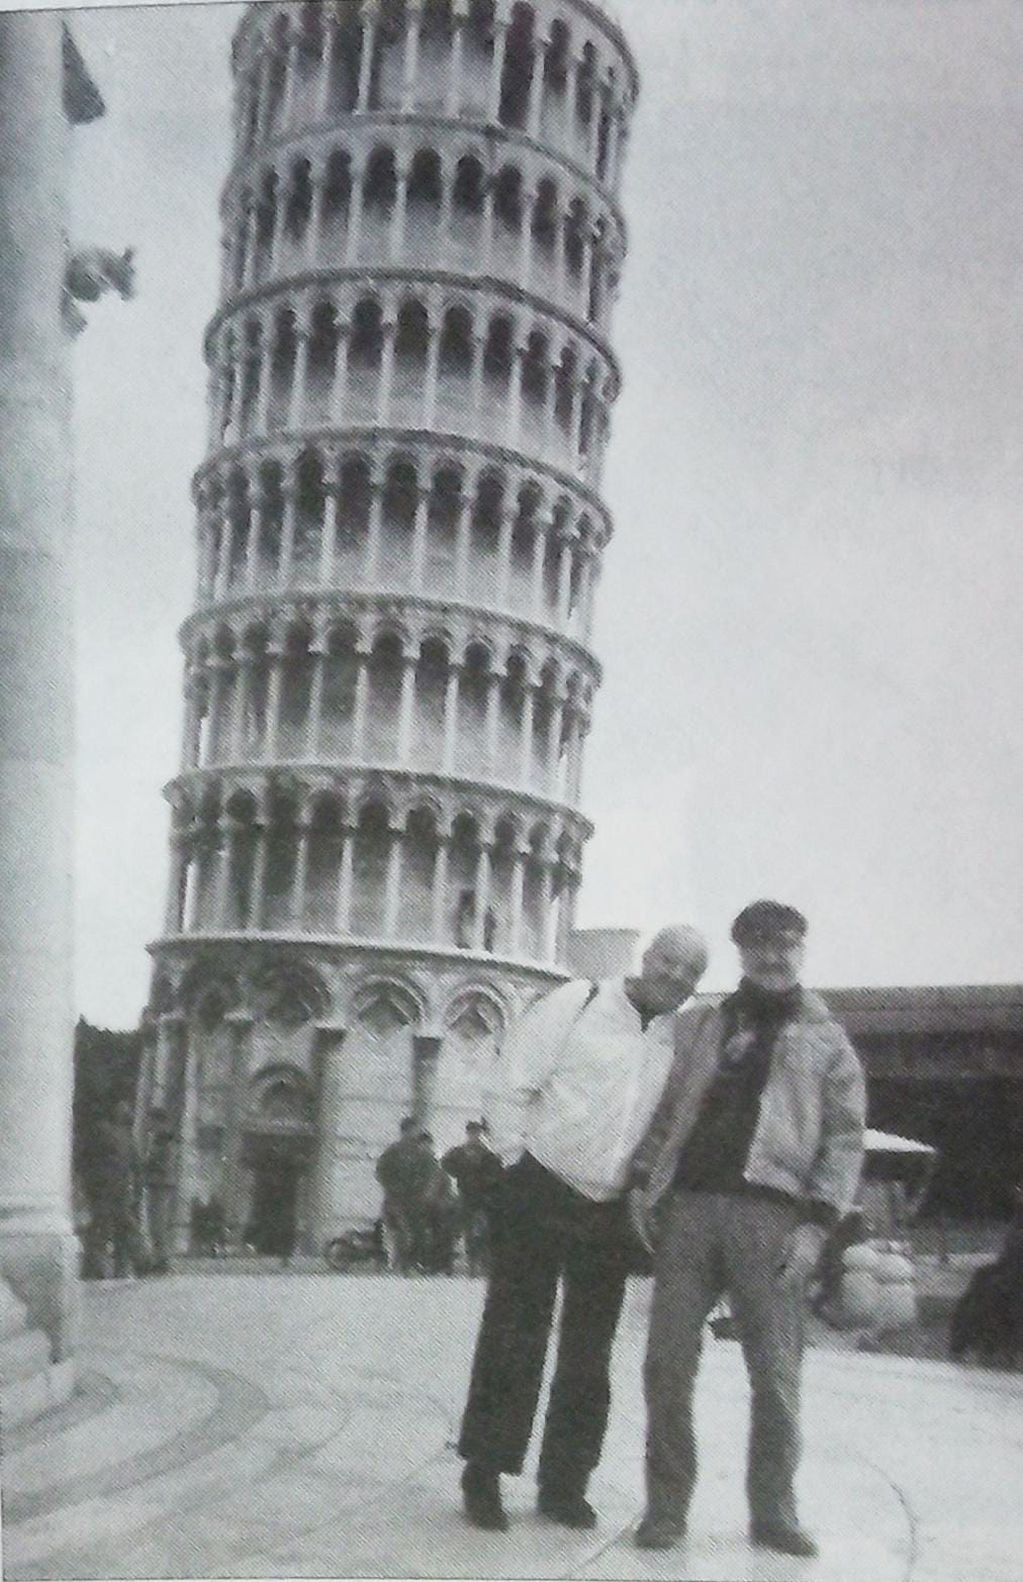 Ástor Piazzolla y Horacio Malvicino en Venecia, en una foto del libro "El tano y yo".